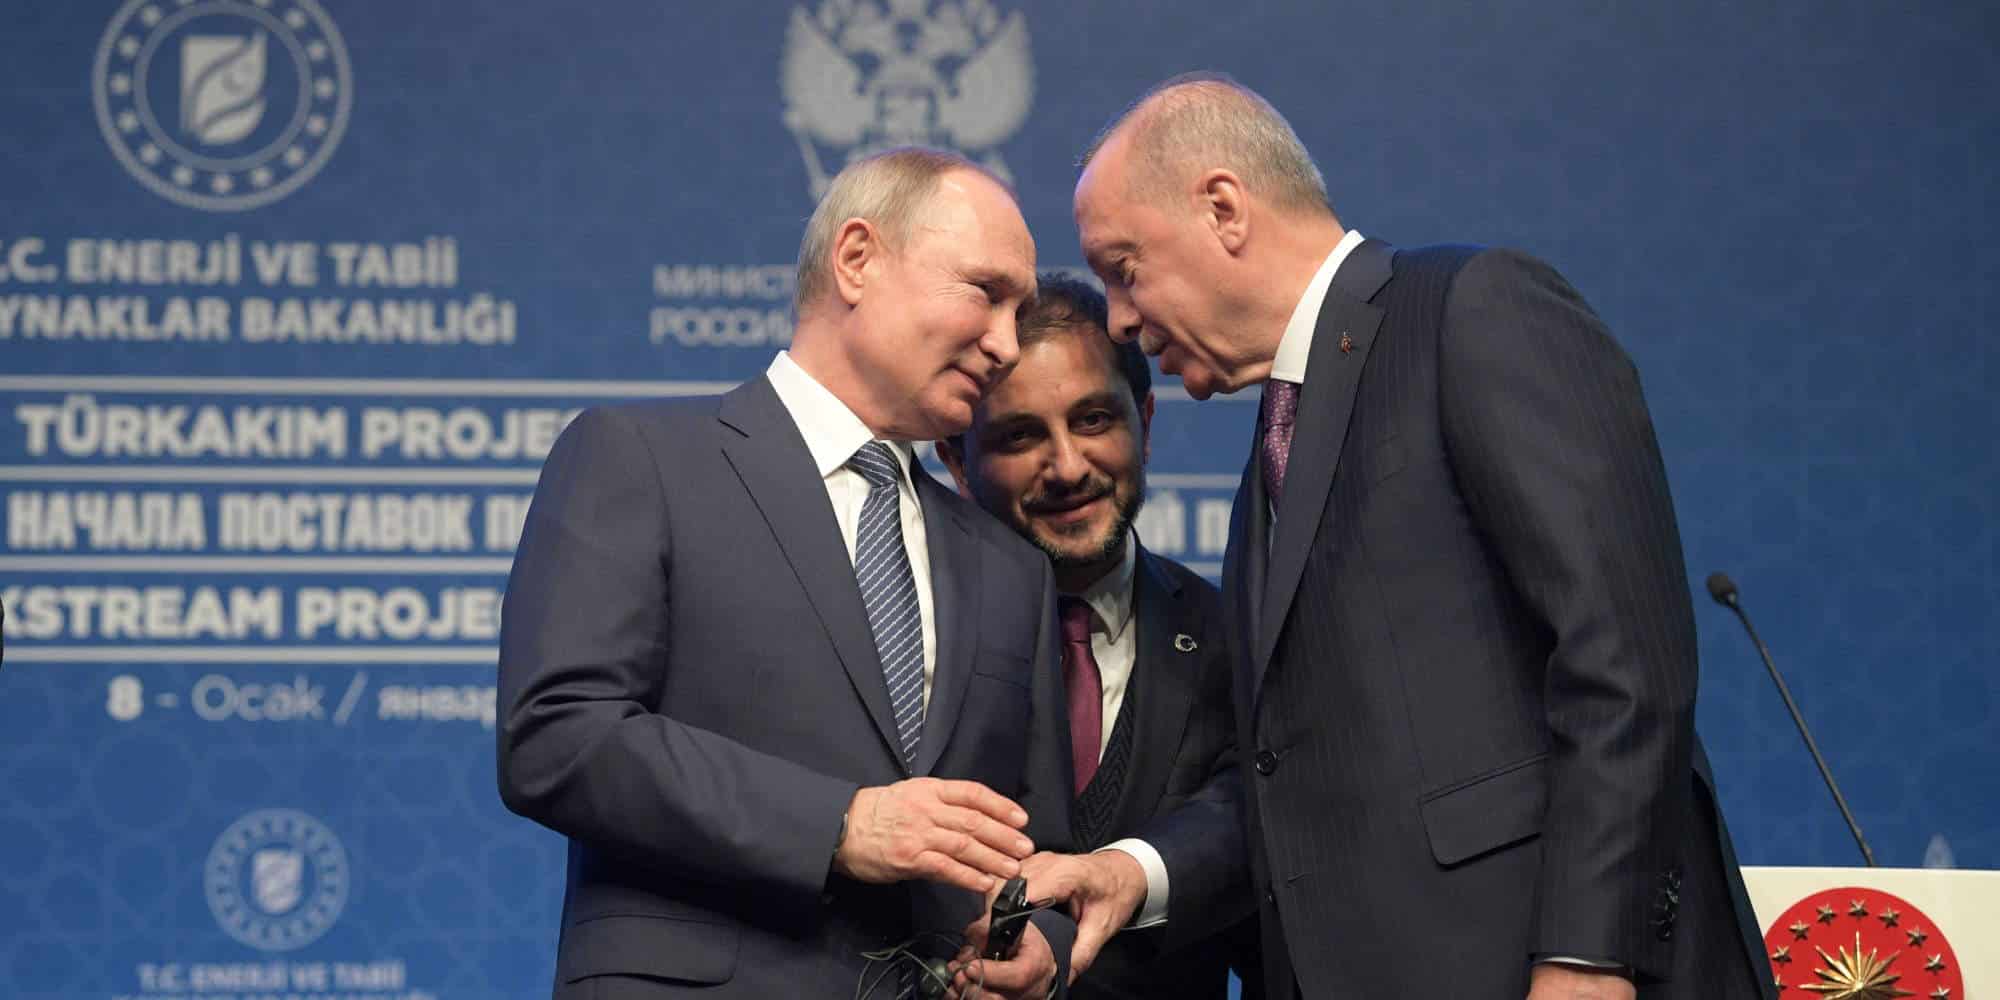 Ο Ρώσος πρόεδρος Βλαντιμίρ Πούτιν, με τον Τούρκο ομόλογό του Ρετζέπ Ταγίπ Ερντογάν